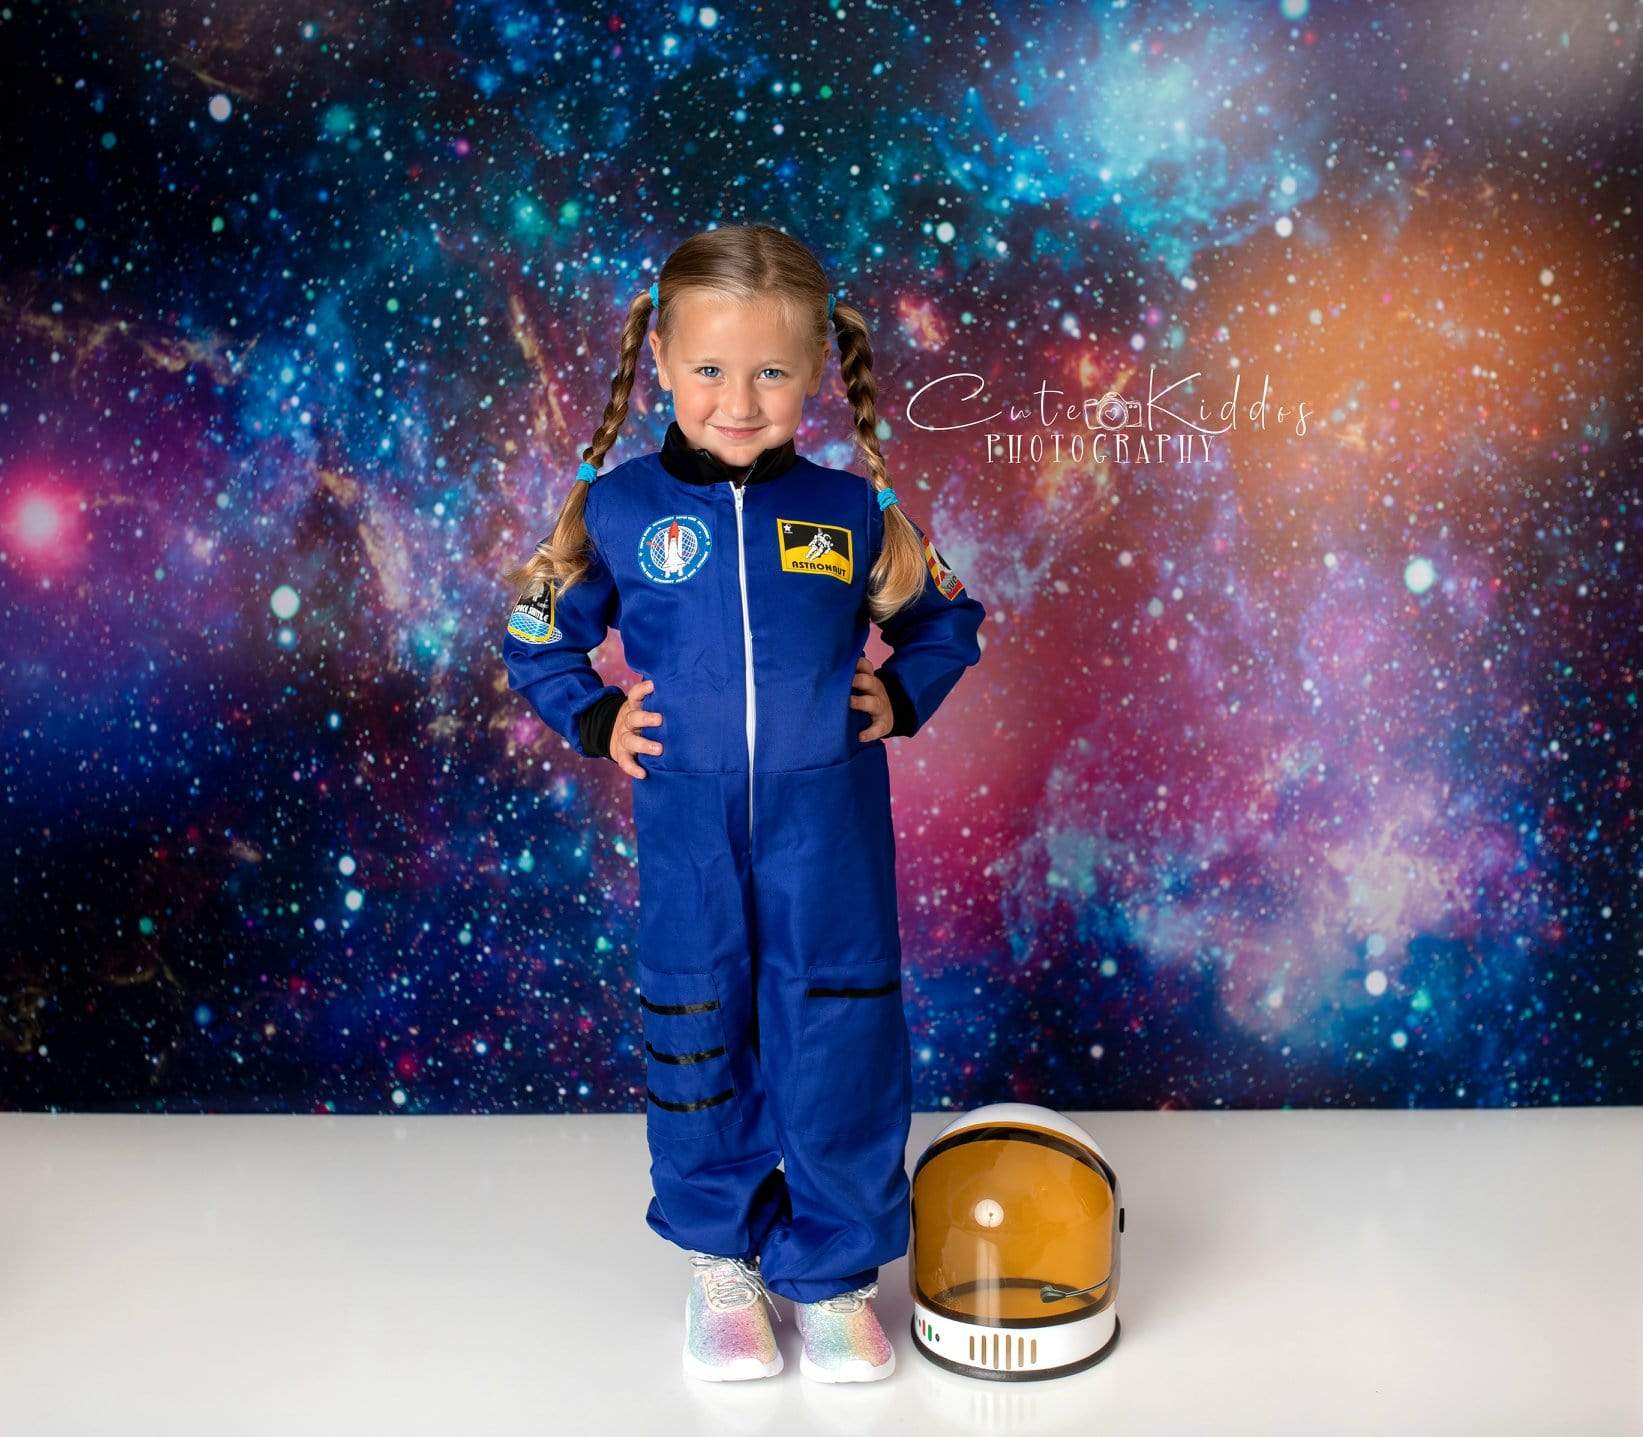 Kate Junge Geburtstag Galaxis Weltraum Hintergrund für die Fotografie